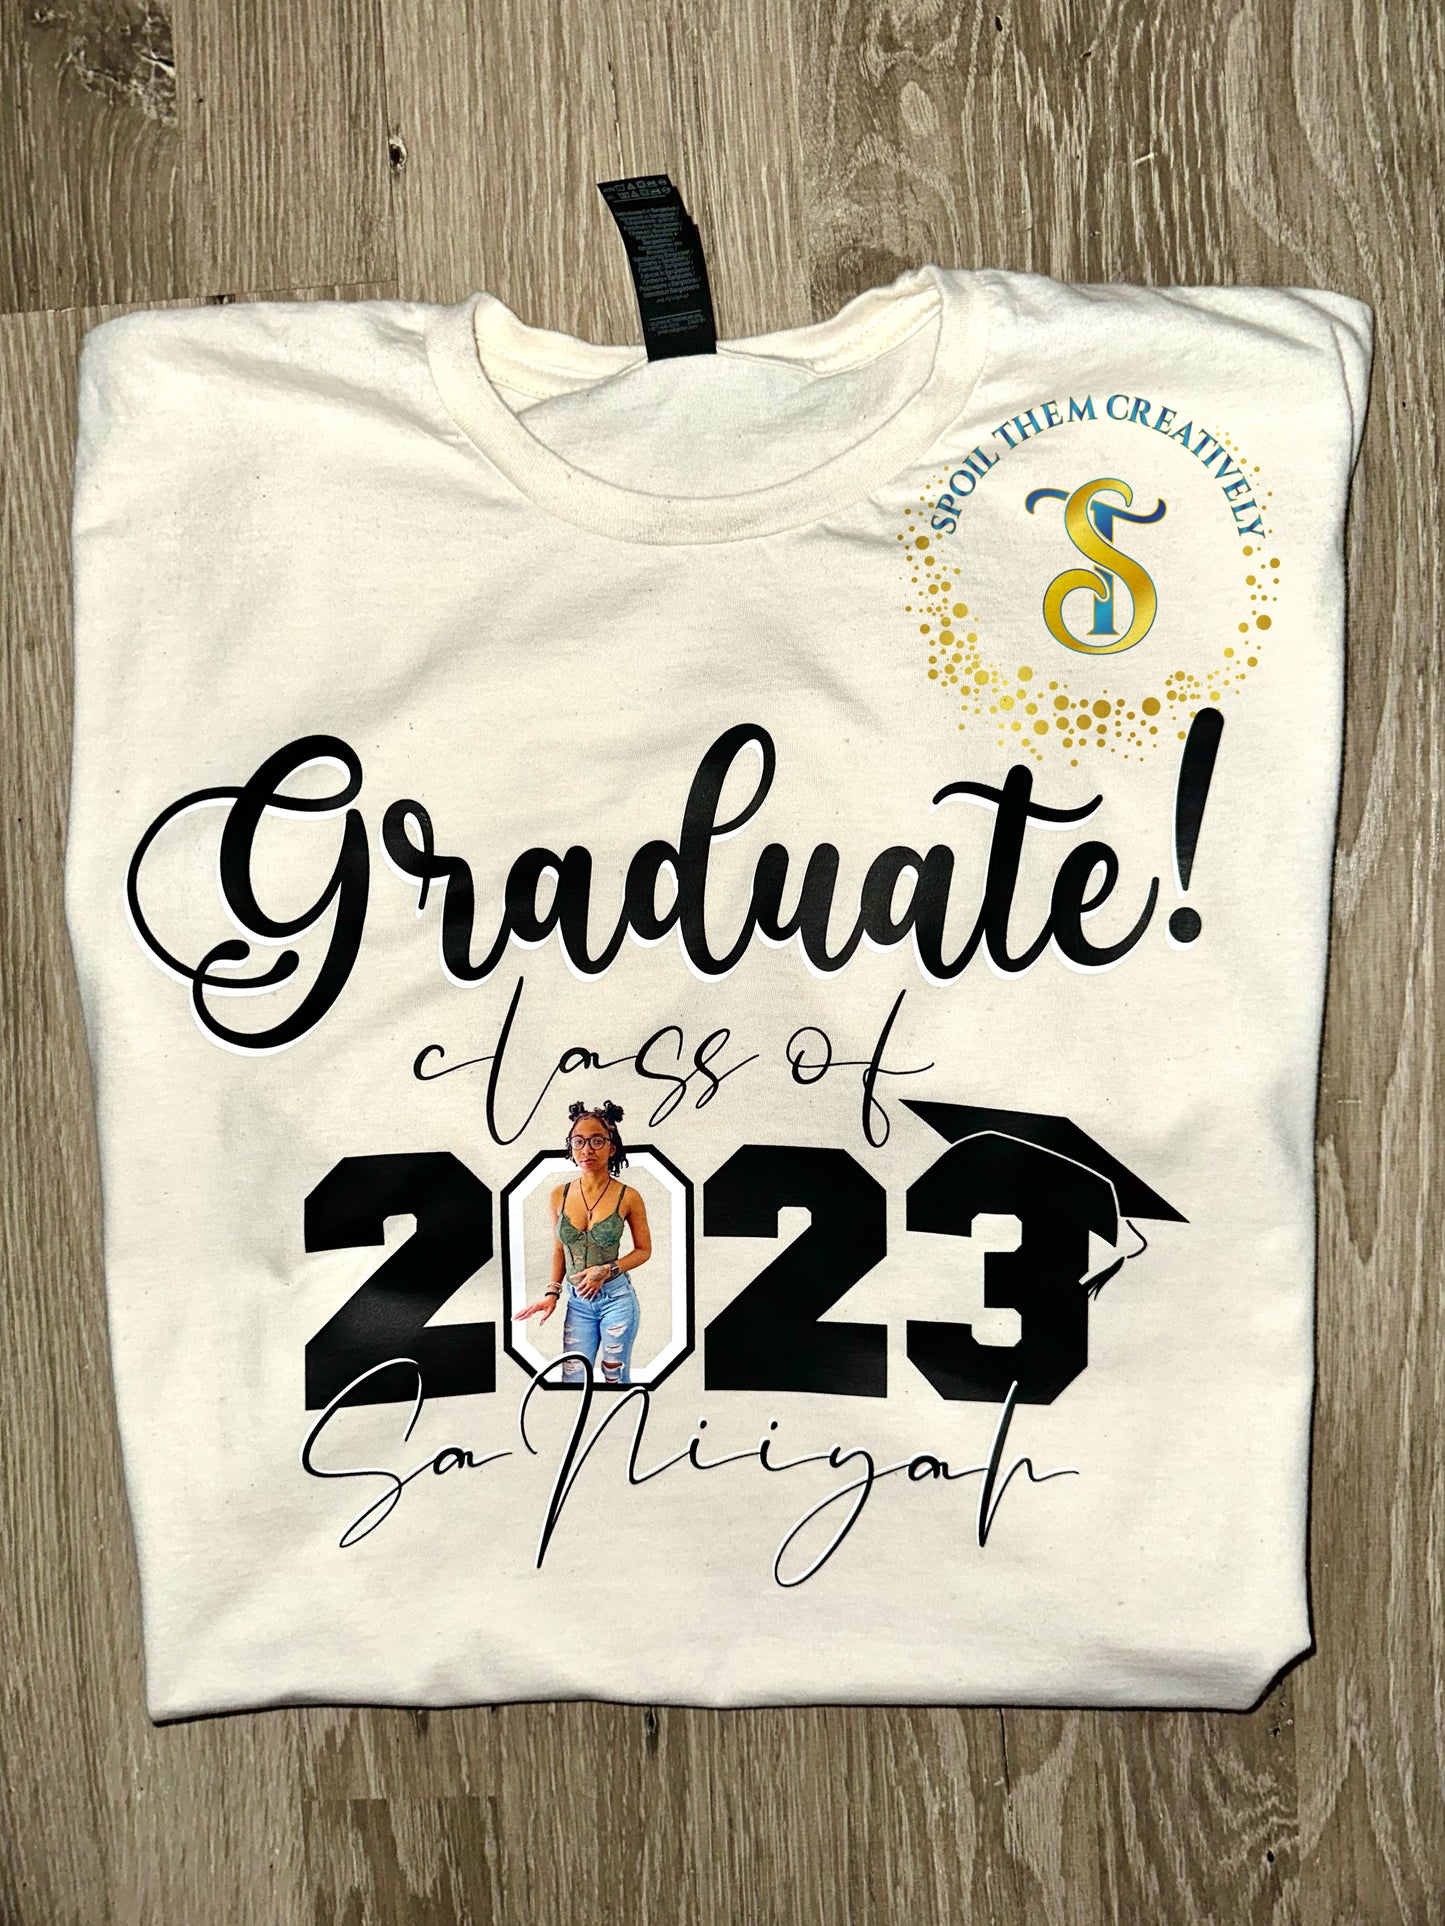 Customize a Graduation T-Shirt!